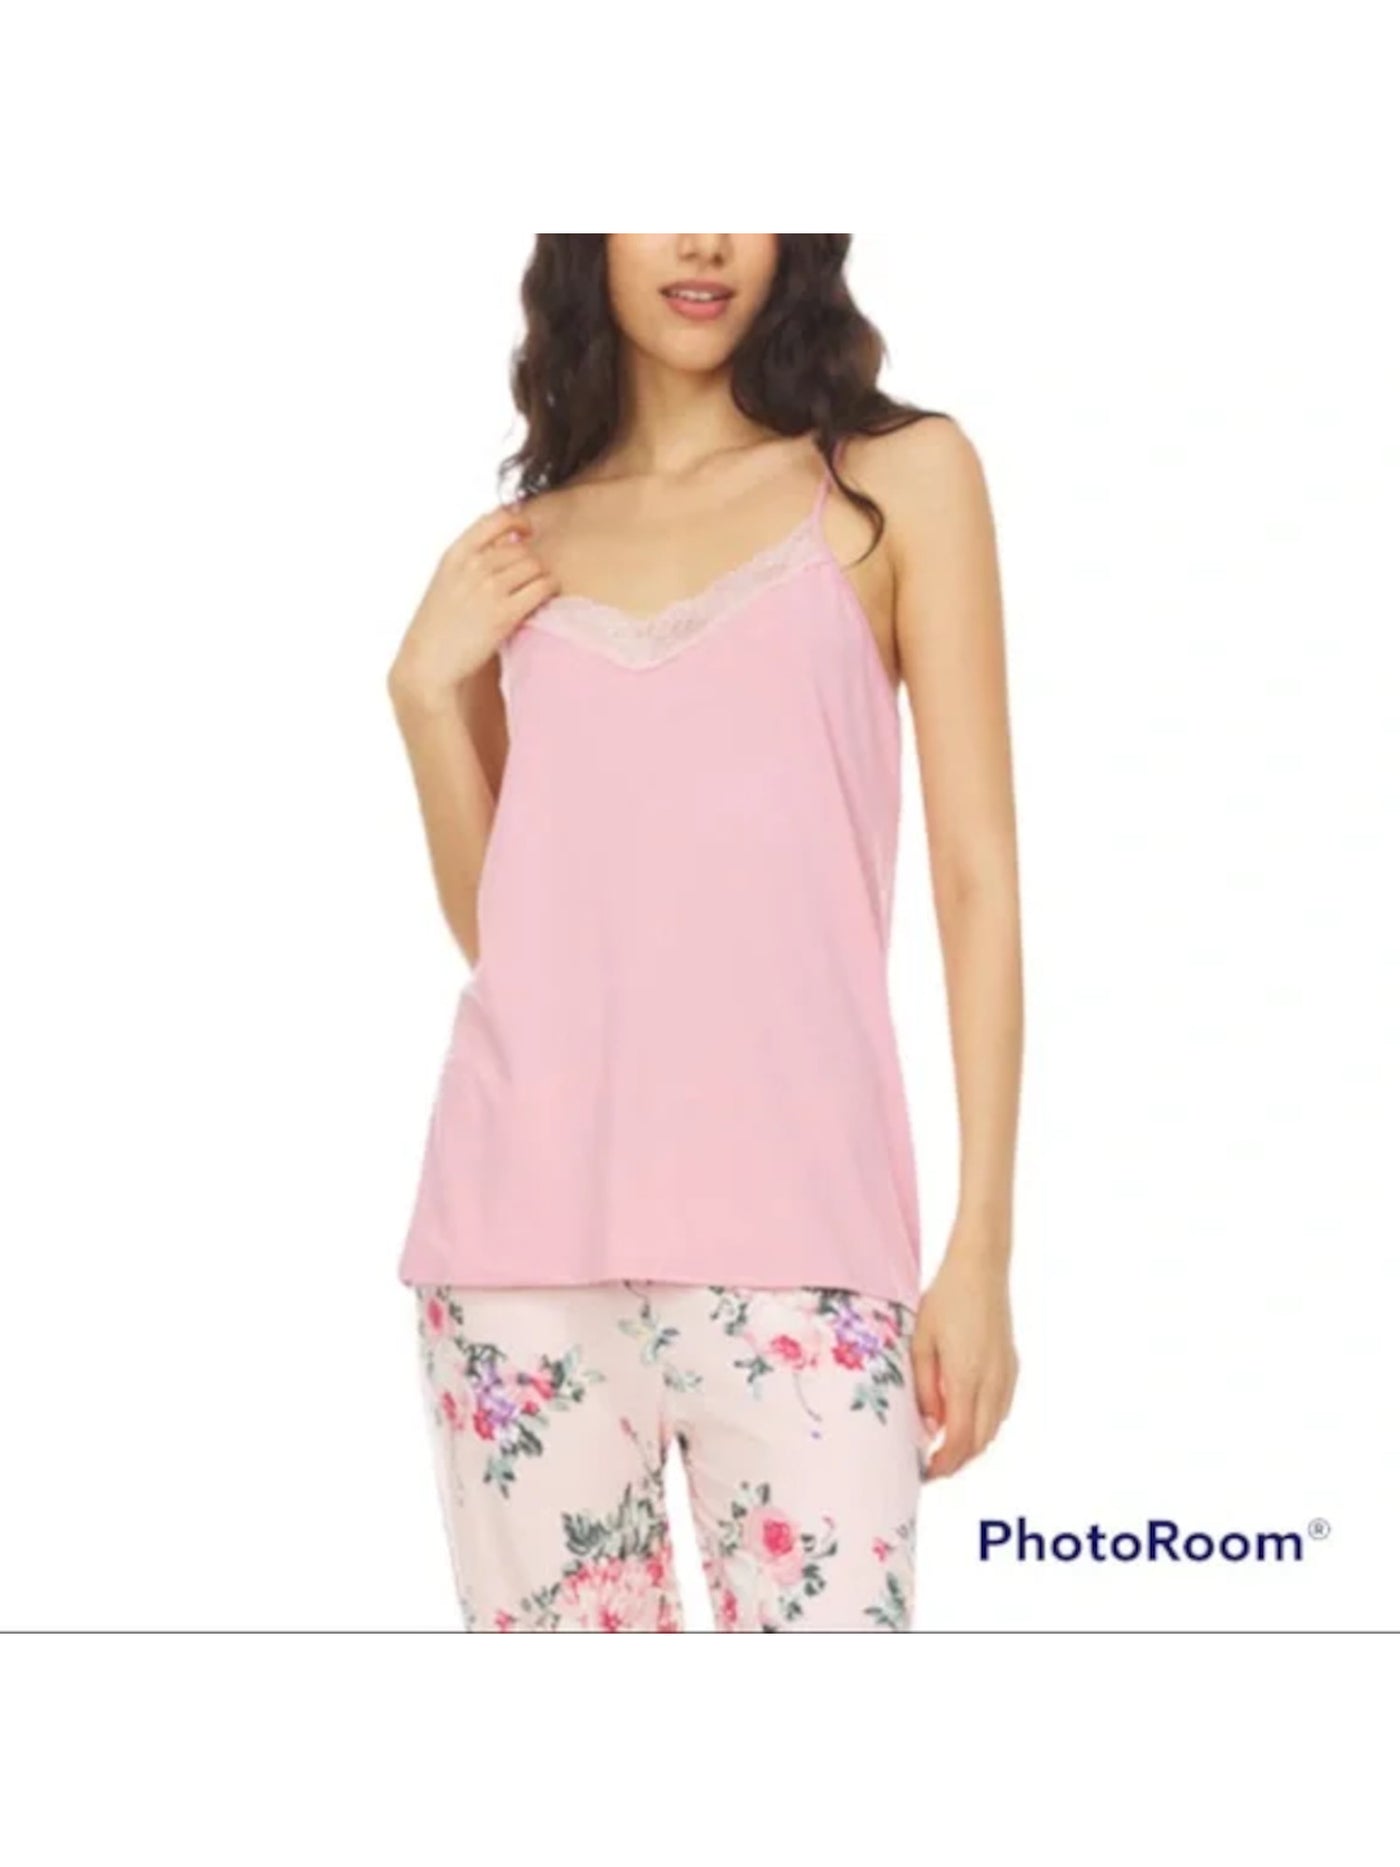 FLORA NIKROOZ Intimates Pink Tank Sleep Shirt Pajama Top XL